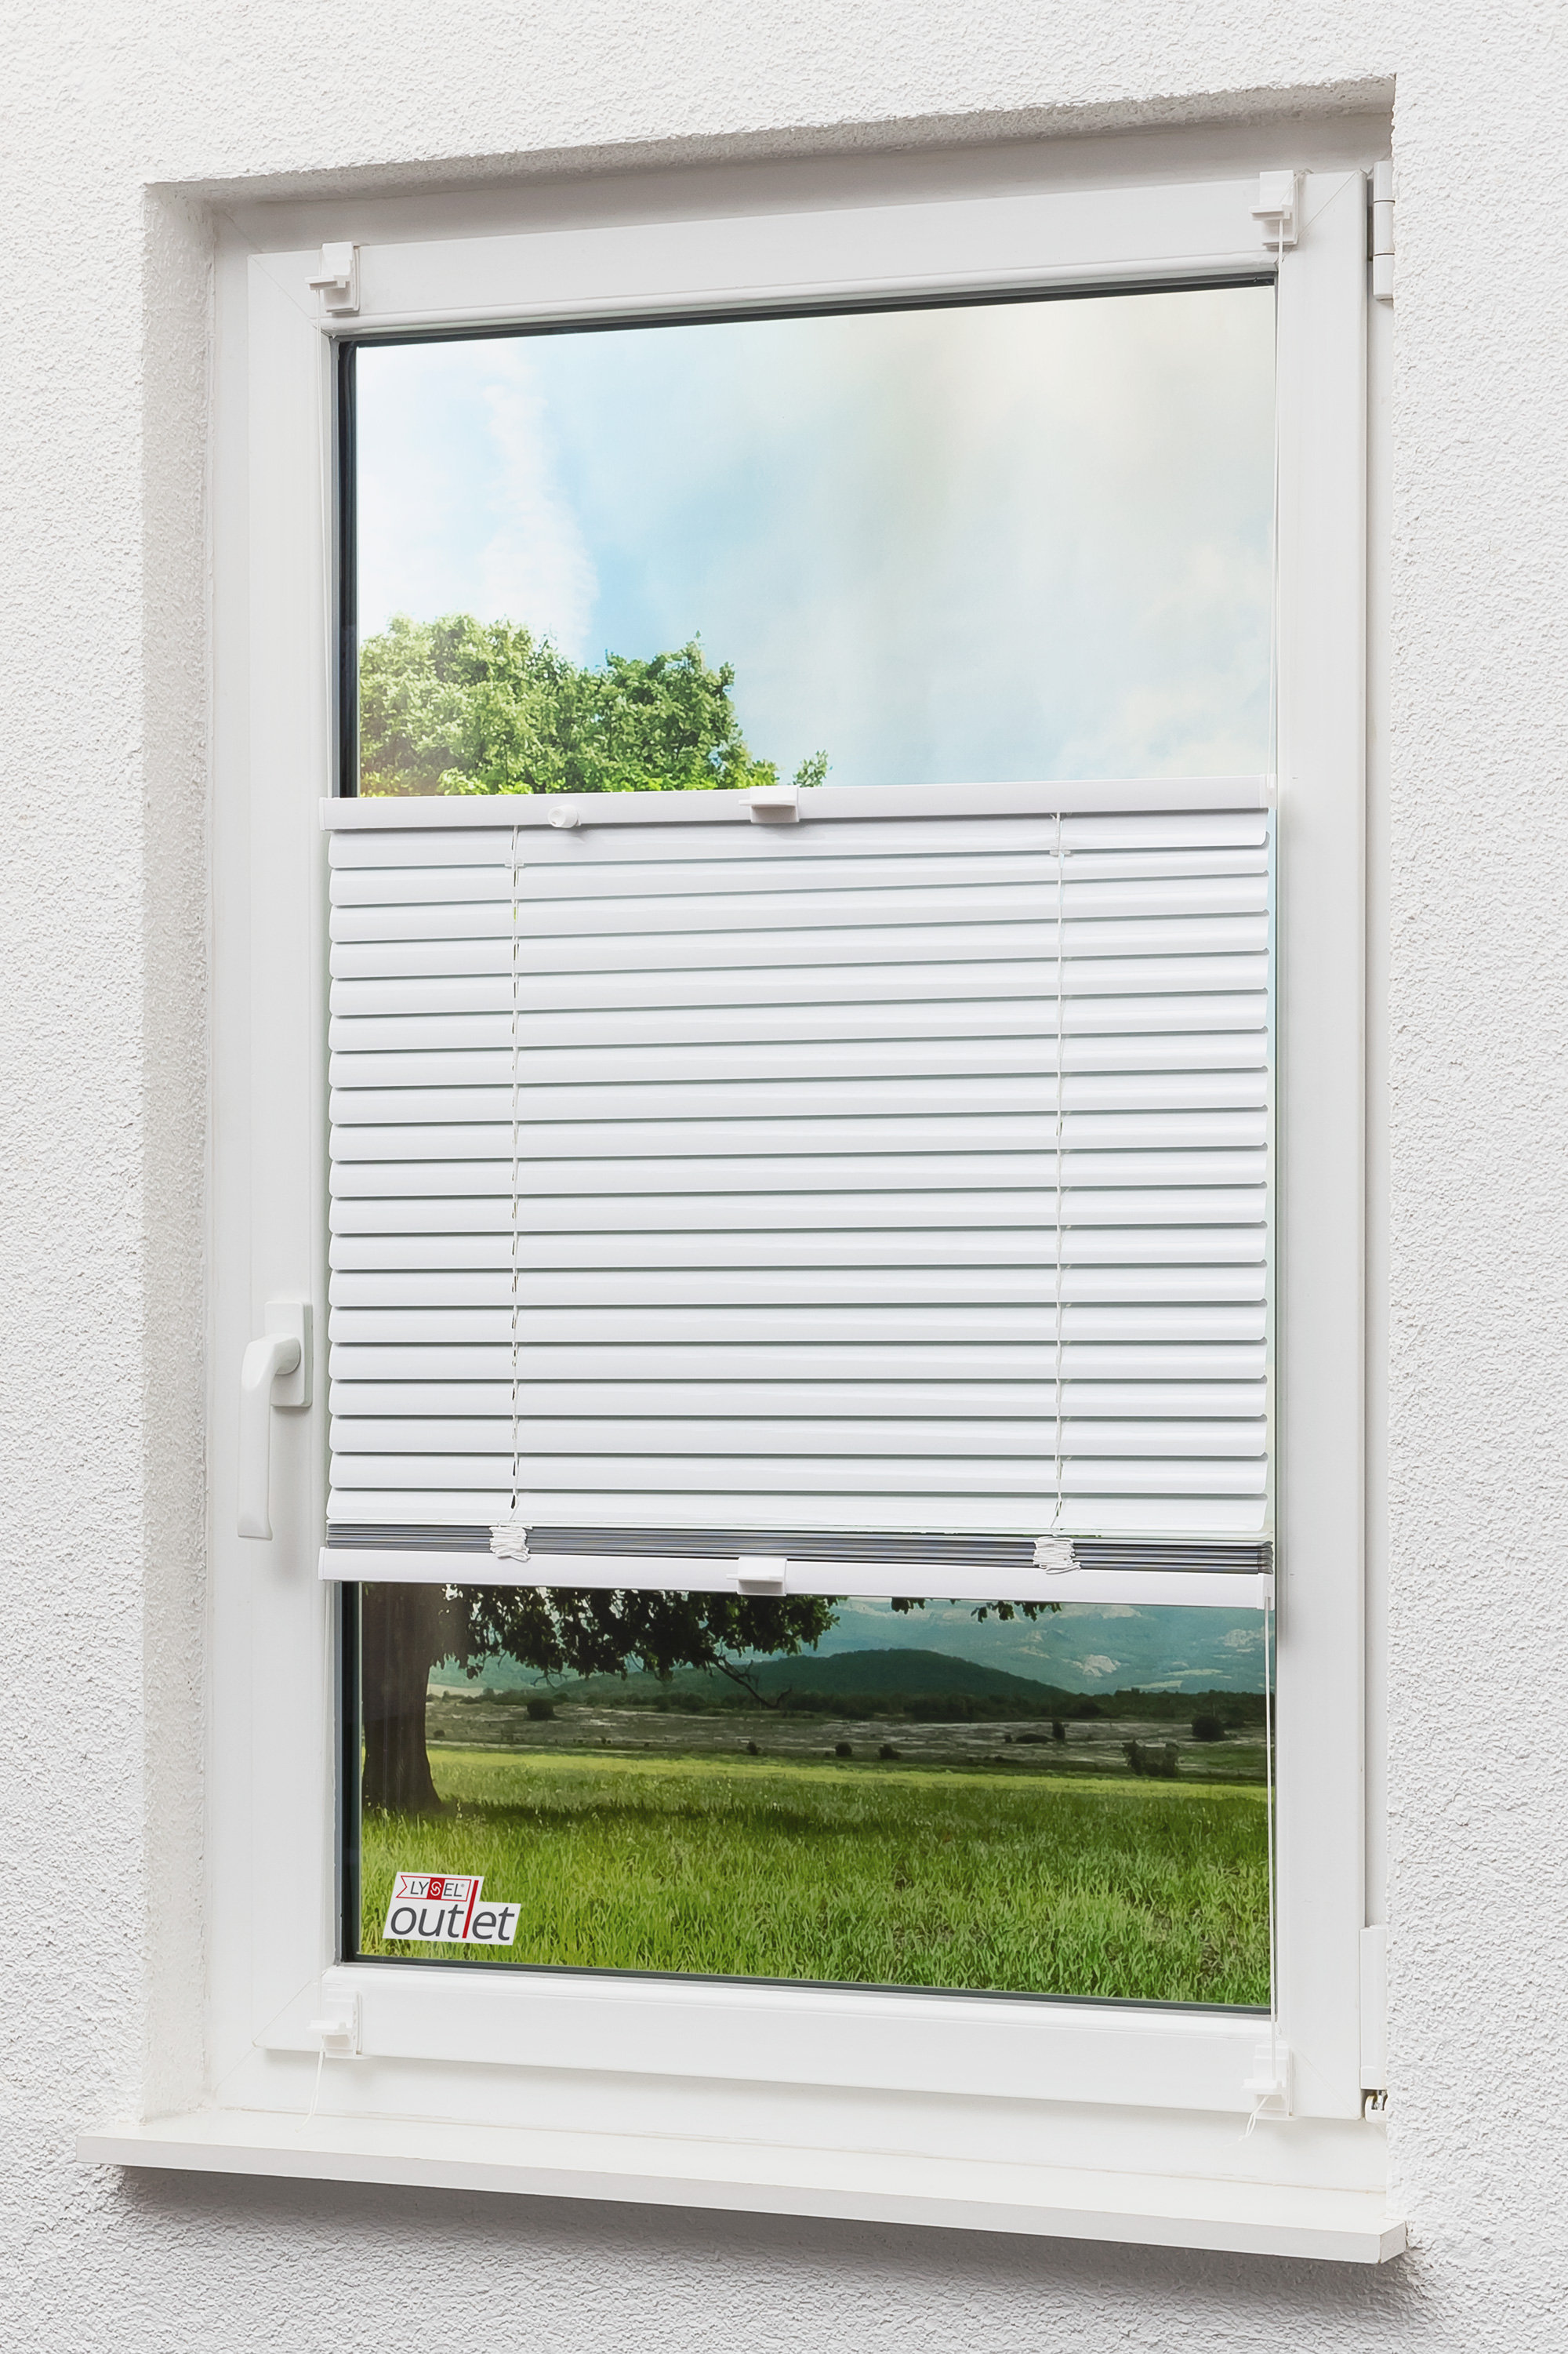 Lysel Outlet Alu-Jalousie 25mm Sichtschutz Sonnenschutz blickdicht Fenster Tür 